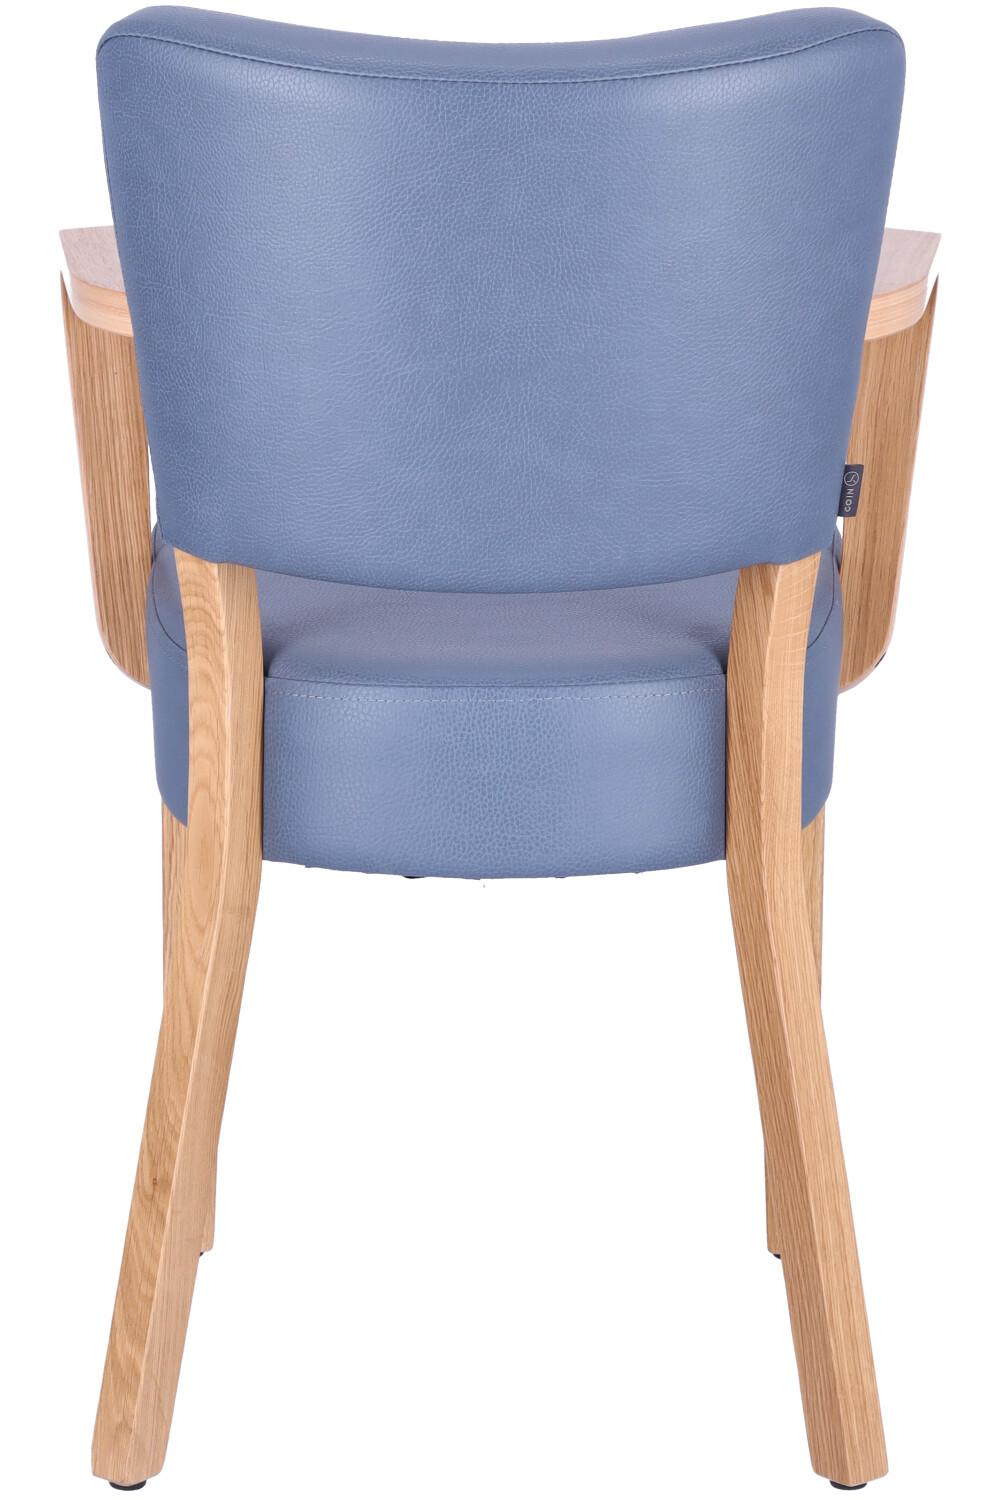 Abbildung arm chair Damara Rückansicht